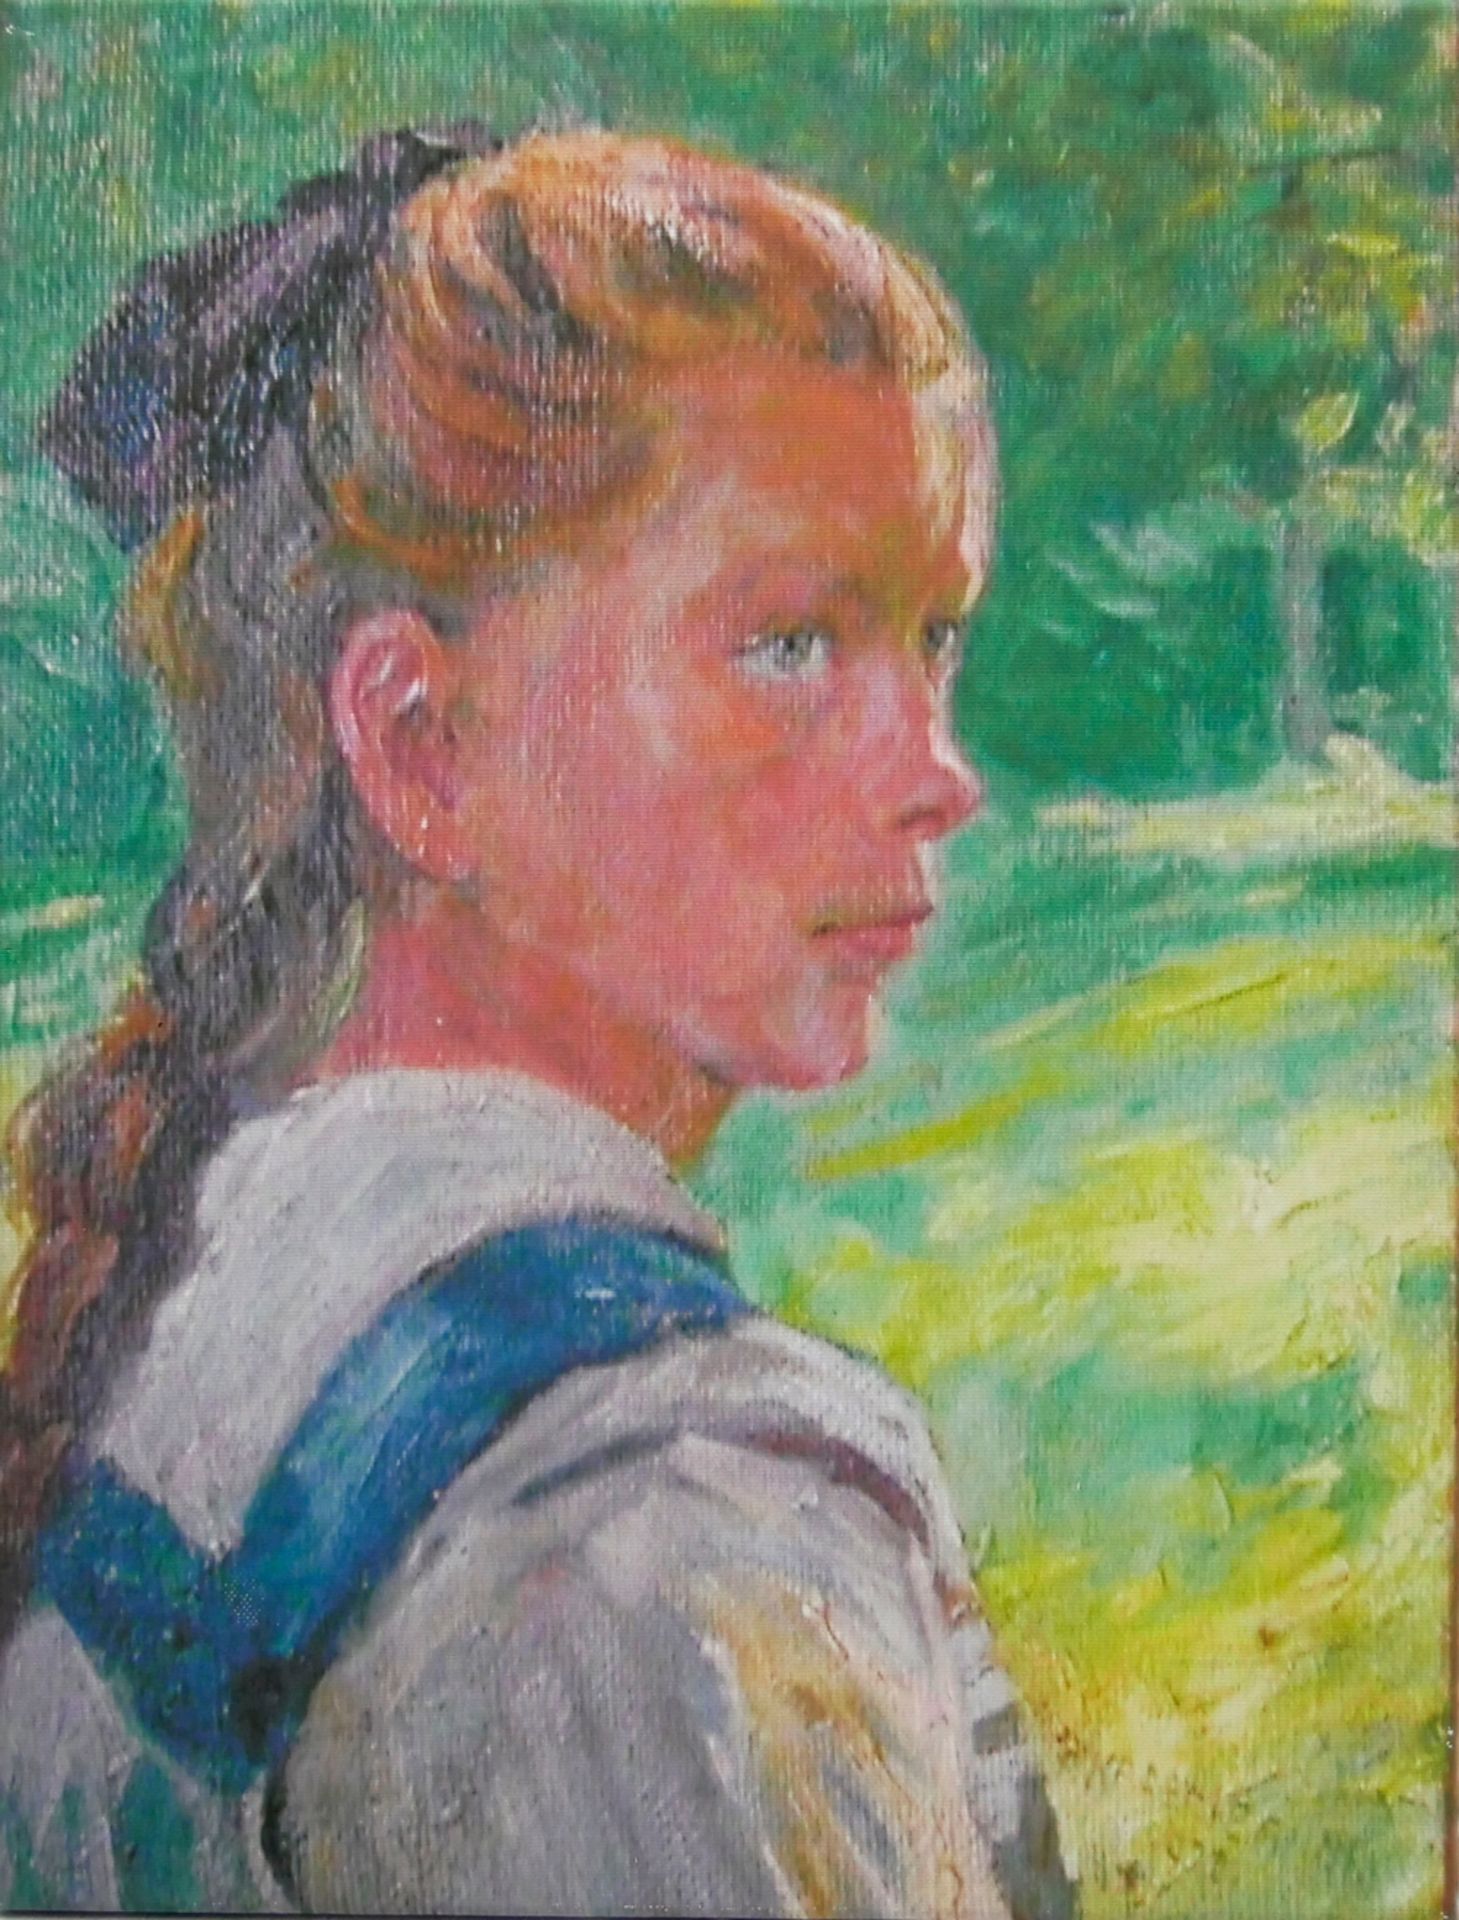 Druckgrafik nach einem Gemälde von P. Krämer "Mädchen" Maße: Höhe ca. 50 cm, Breite ca. 40 cm